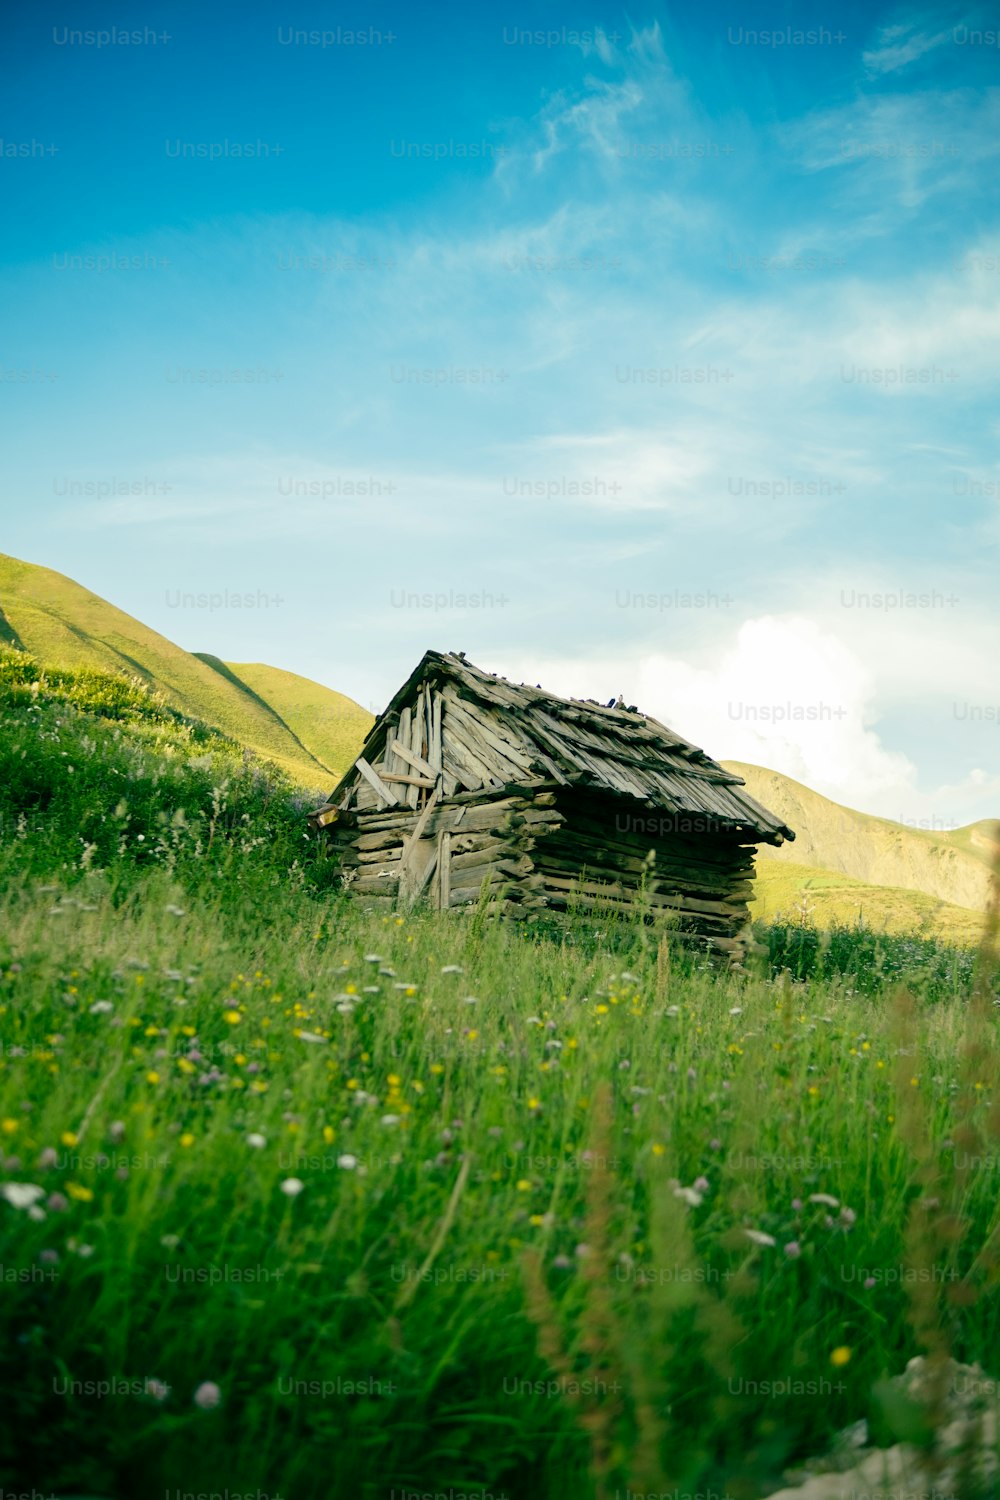 Una pequeña cabaña de madera en un campo cubierto de hierba